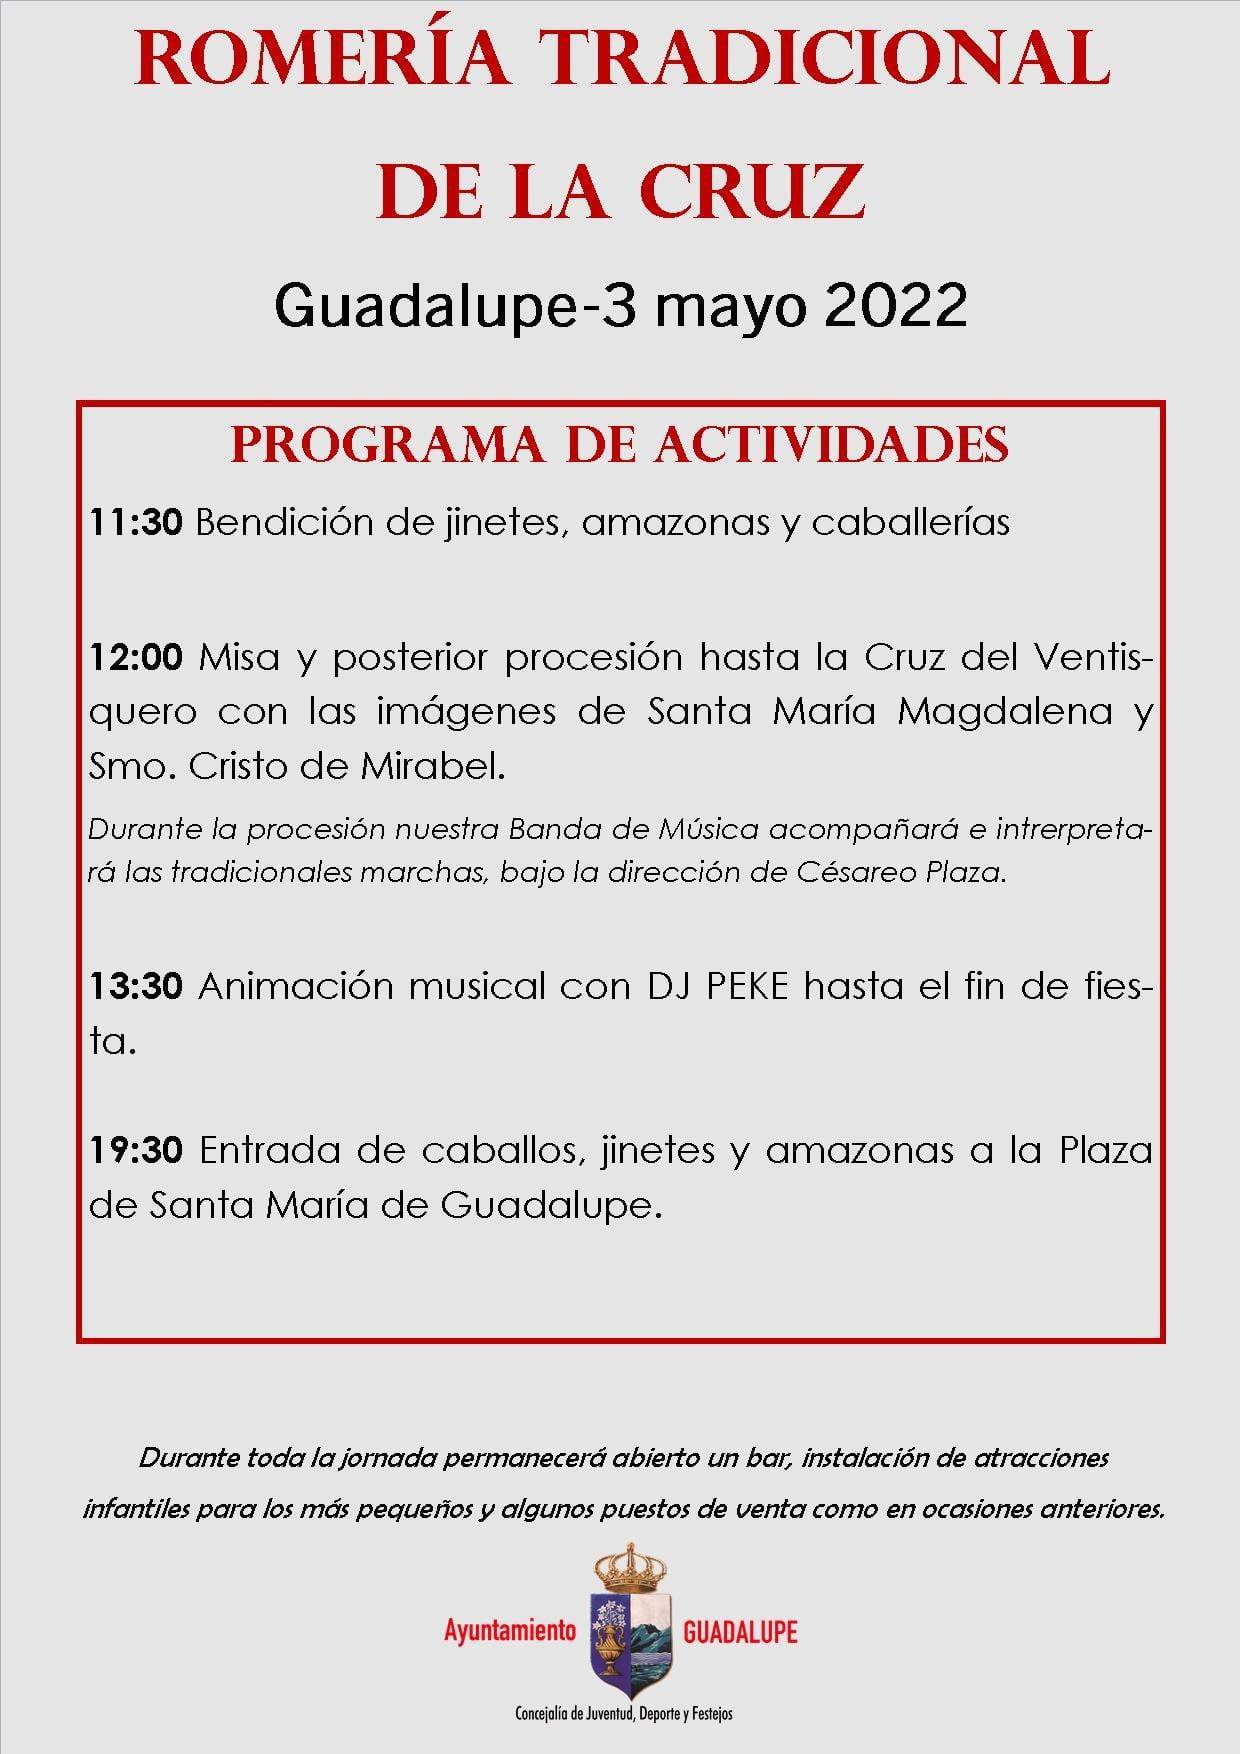 Romería tradicional de la Cruz (2022) - Guadalupe (Cáceres) 2